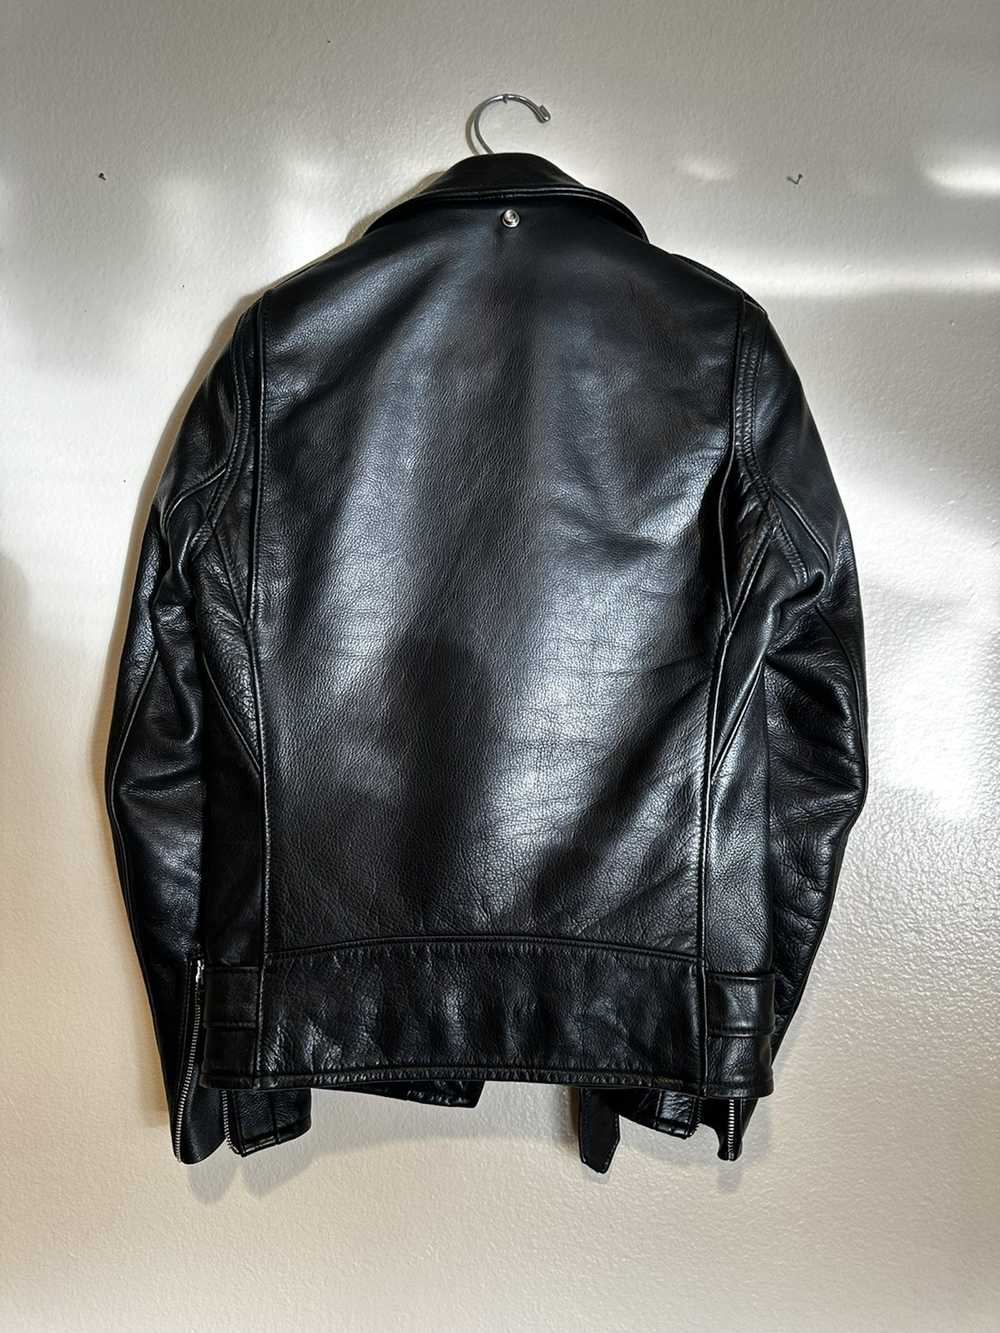 Schott Schott Perfecto leather jacket - image 2